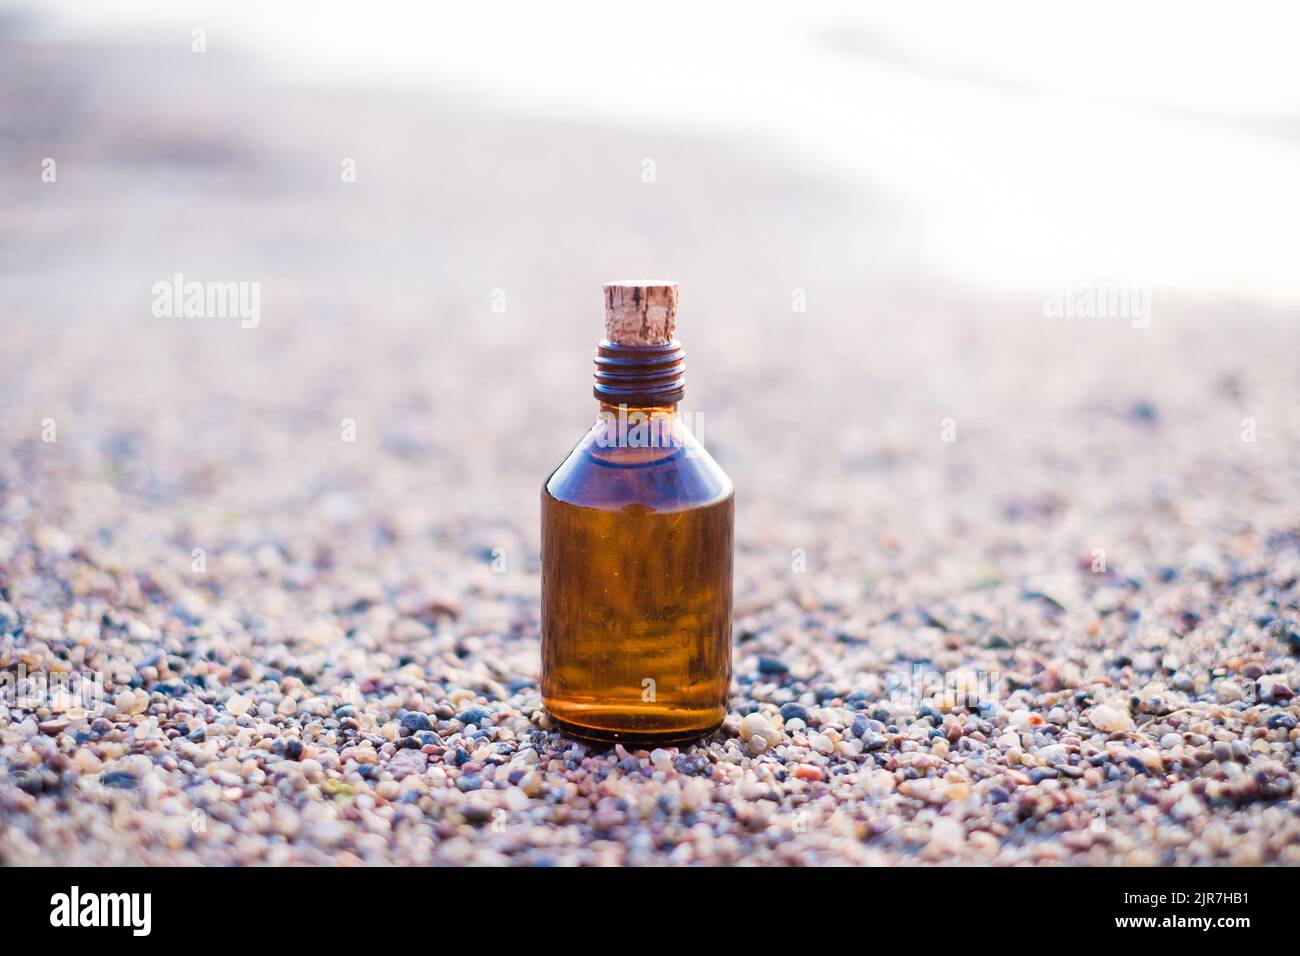 Bouteille d'huile essentielle sur une plage avec des rochers. Petite bouteille de médecine brune en fond de nature. Huile de chanvre biologique CBD. Banque D'Images